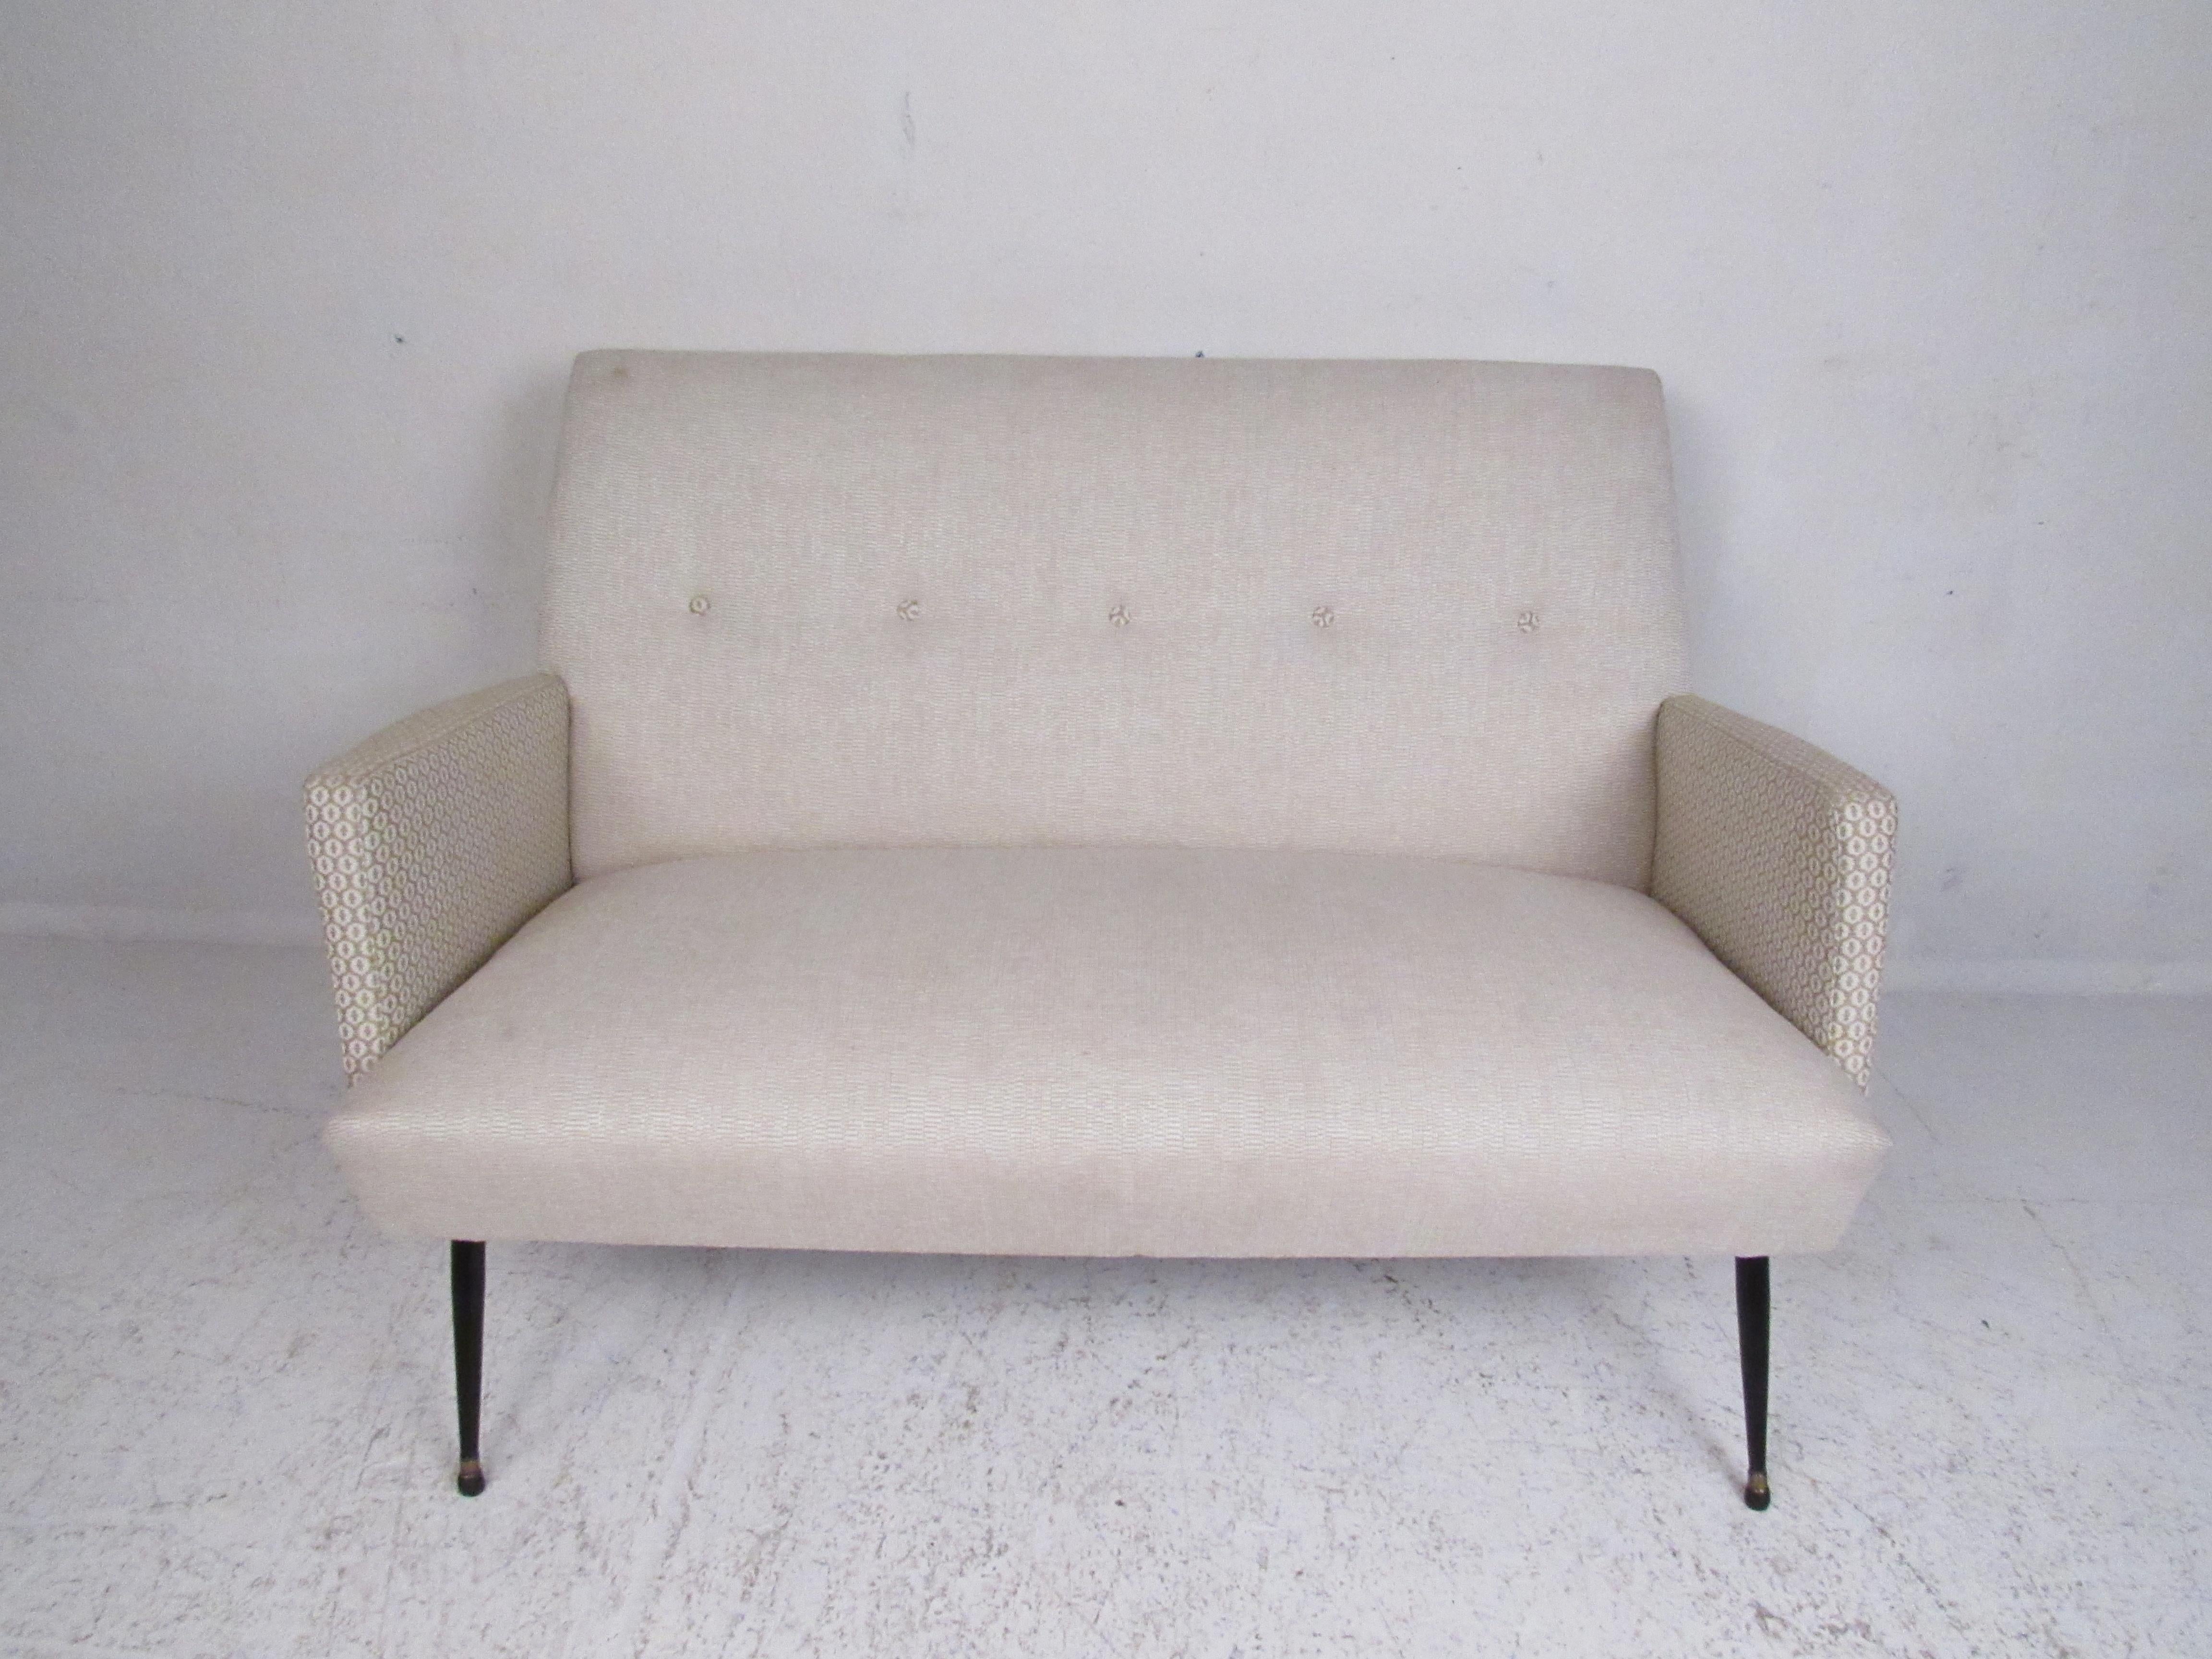 Dieses atemberaubende italienische Sofa im modernen Vintage-Stil verfügt über gespreizte Metallbeine mit Messingfüßen und eine getuftete Rückenlehne. Ein bequemes Sofa mit cremefarbener Polsterung und dekorativen Armlehnen. Dieses stilvolle Sofa ist